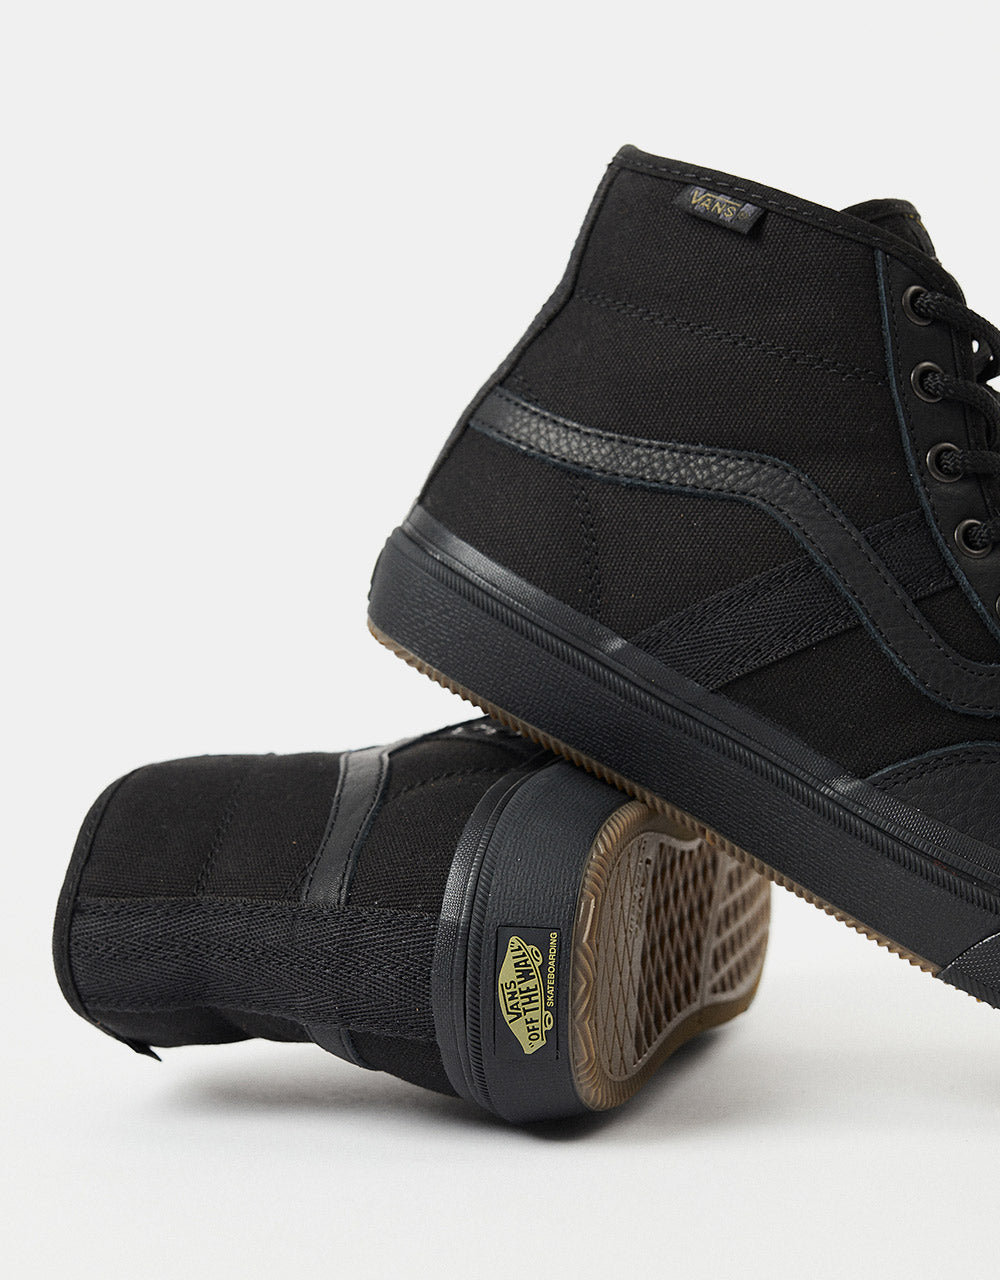 Vans Crockett High Skate Shoes - (Butter Leather) Black/Black